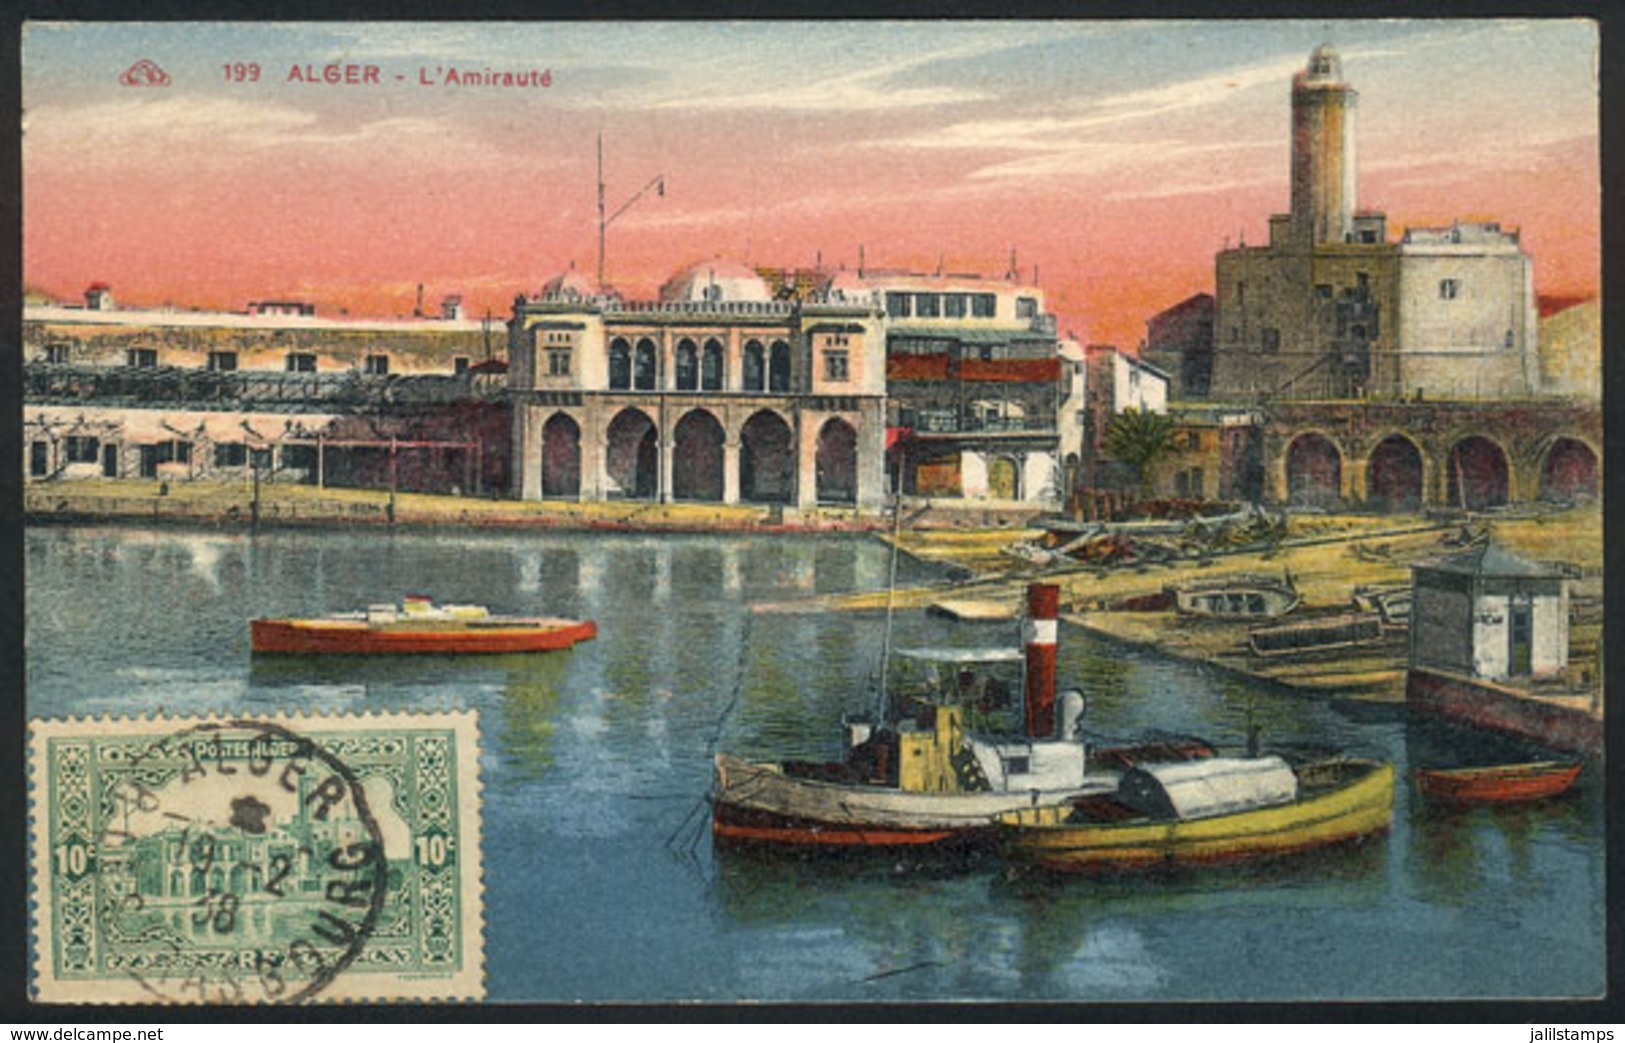 ALGERIA: ALGIERS: L'Amiraute, Architecture, Old Maximum Card, VF Quality - Maximum Cards